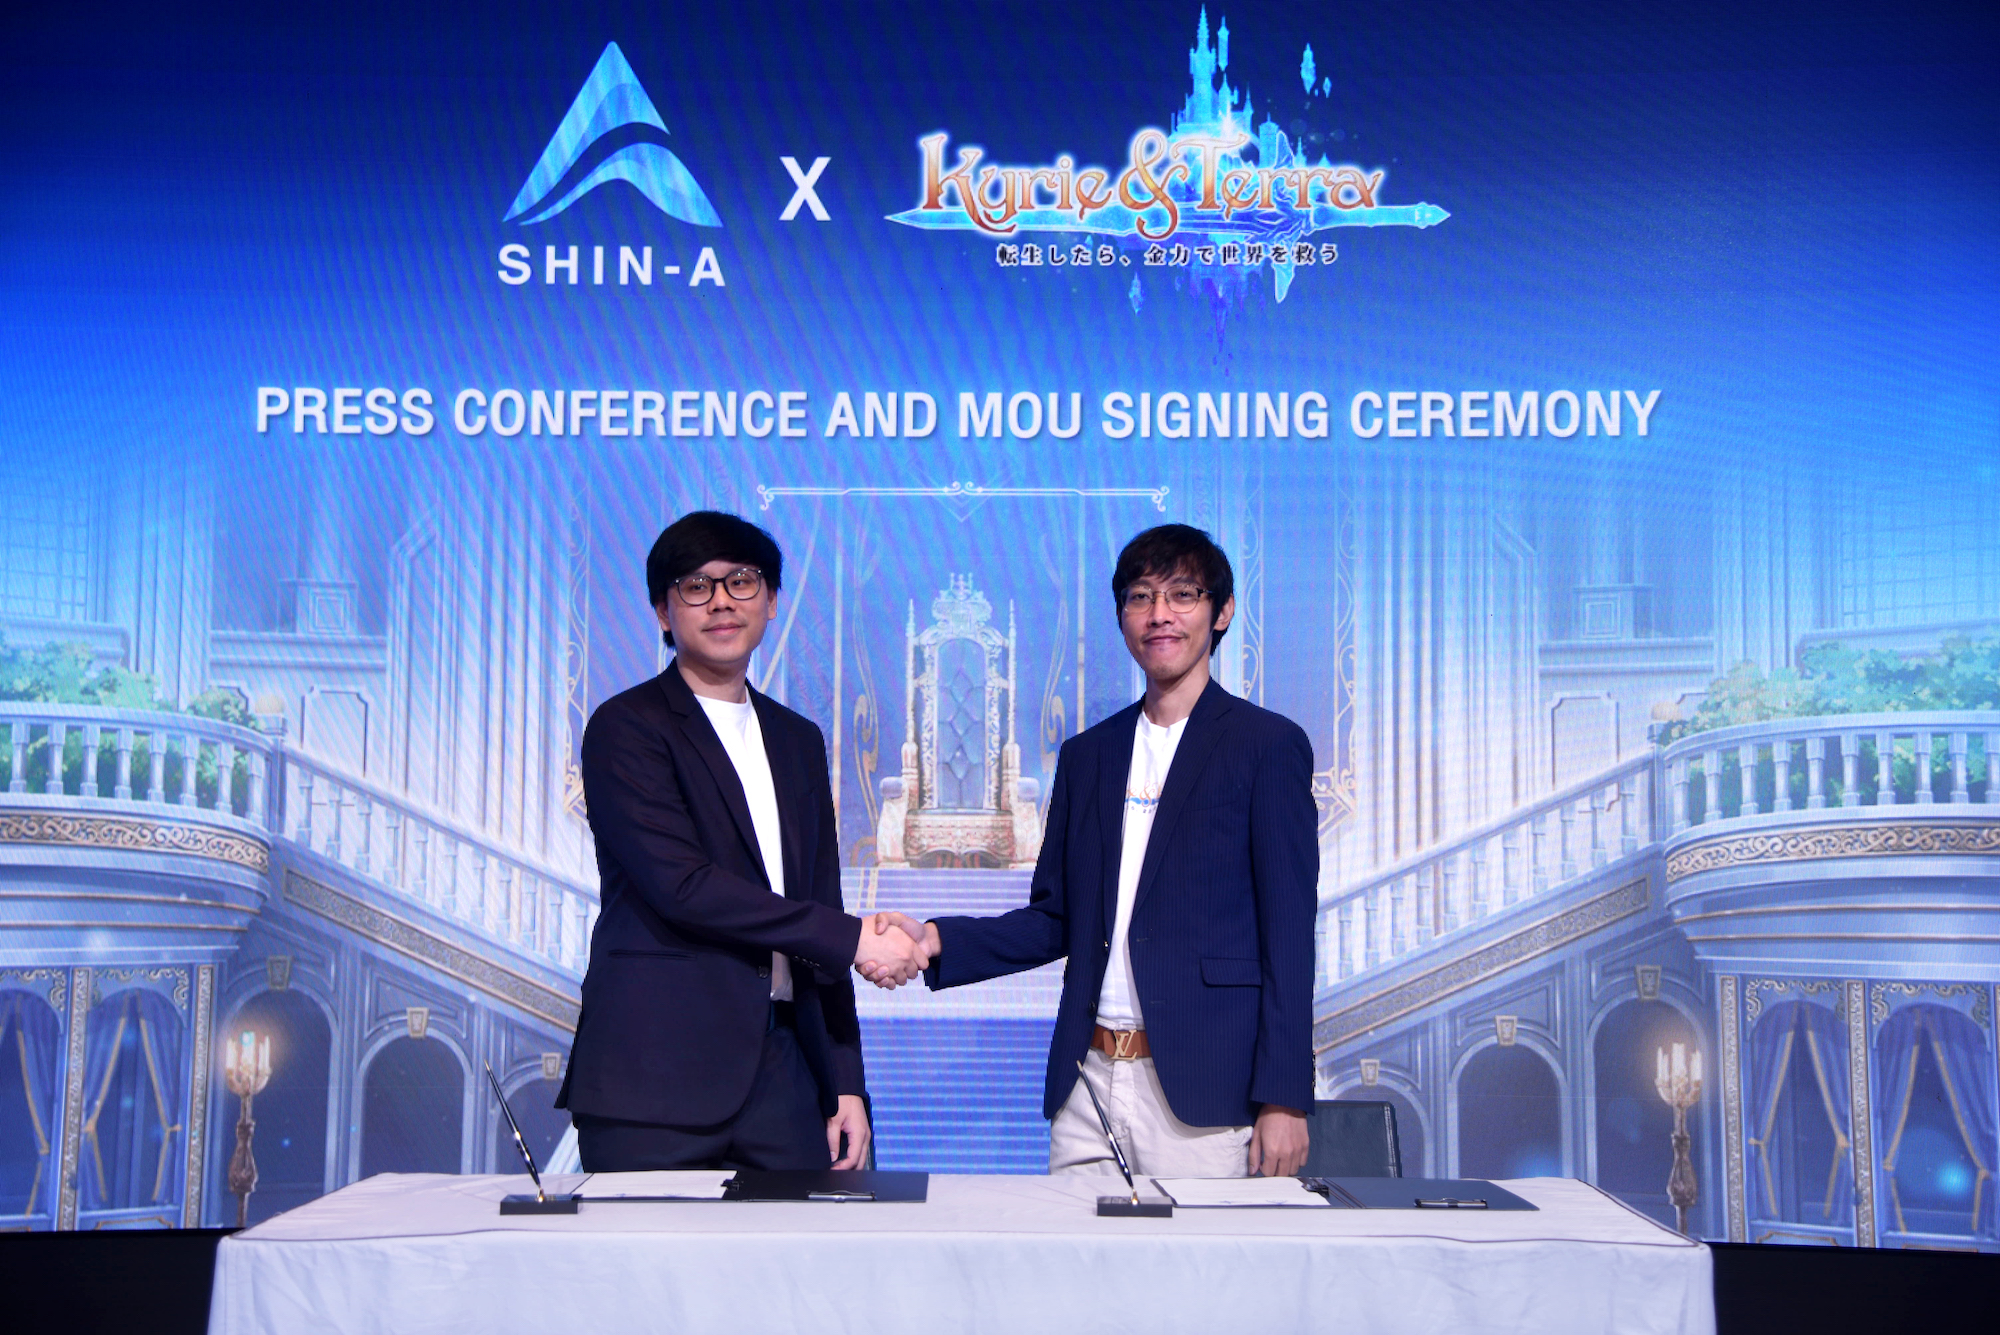 SHIN-A ผนึกกำลัง Kyrie & Terra เสริมความแกร่งทางธุรกิจ  ร่วมขยายตลาดเกมสู่เอเชียตะวันออกเฉียงใต้